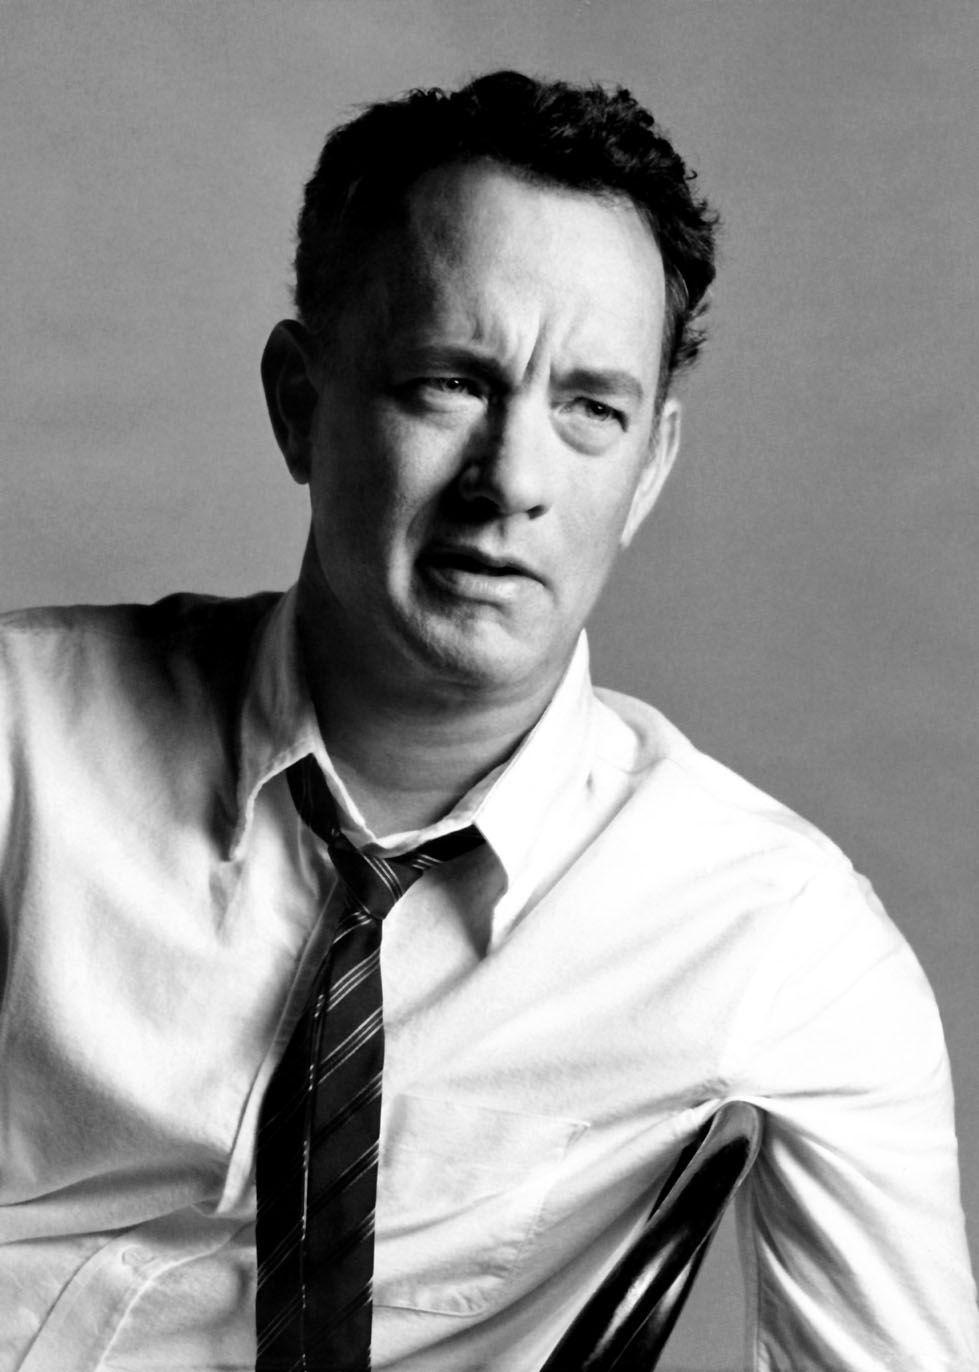 Tom Hanks Wallpaper. Celebrities Wallpaper Gallery